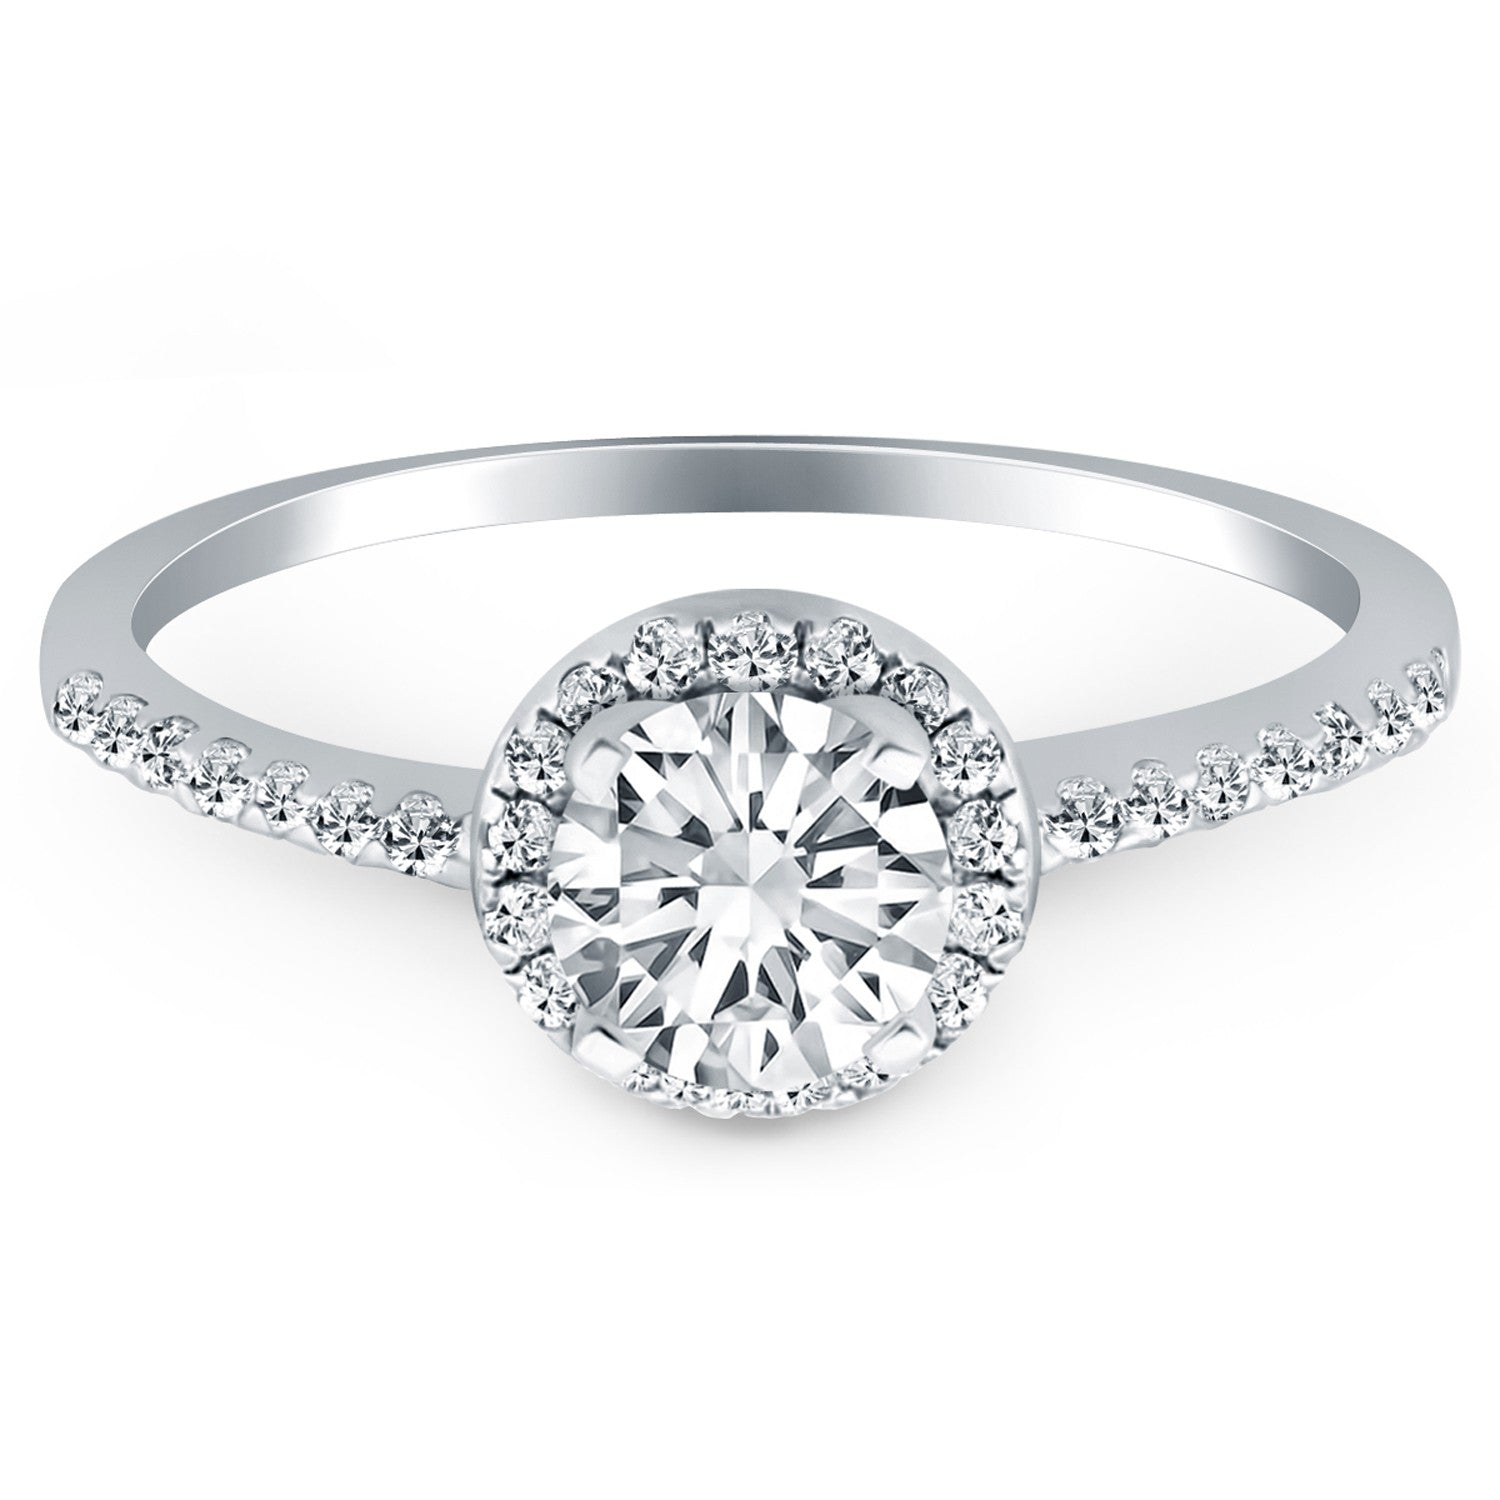 14k White Gold Diamond Halo Collar Engagement Ring Mounting